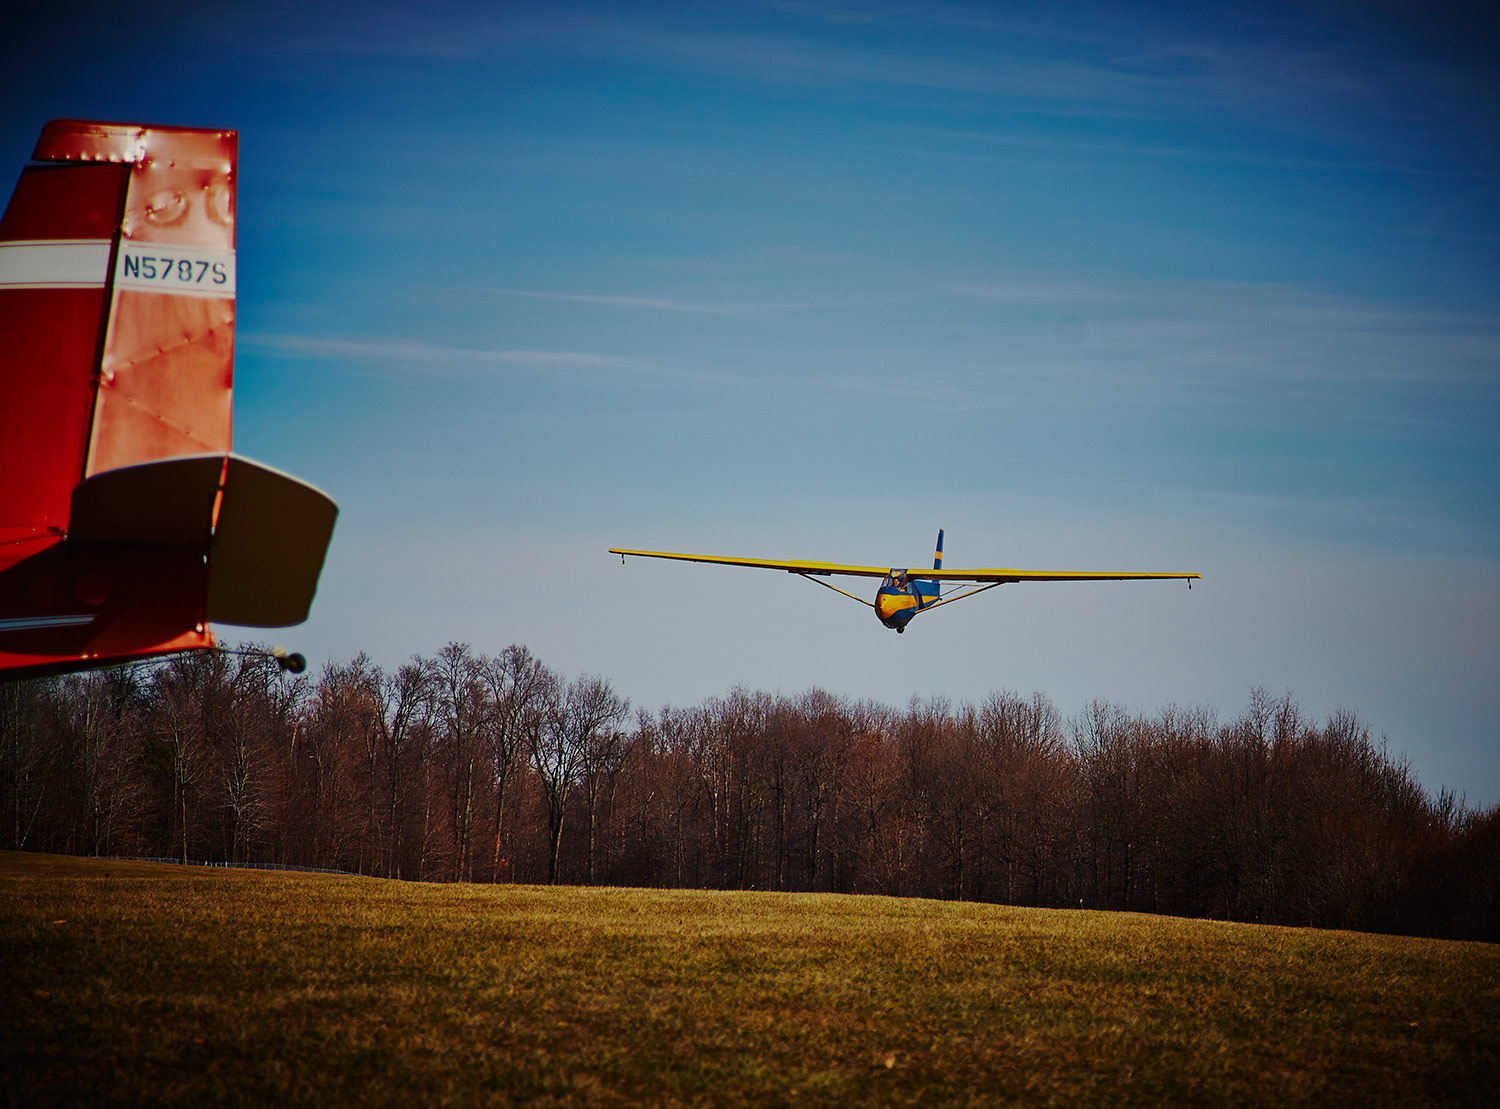 glider launch photo ©2014 bret wills